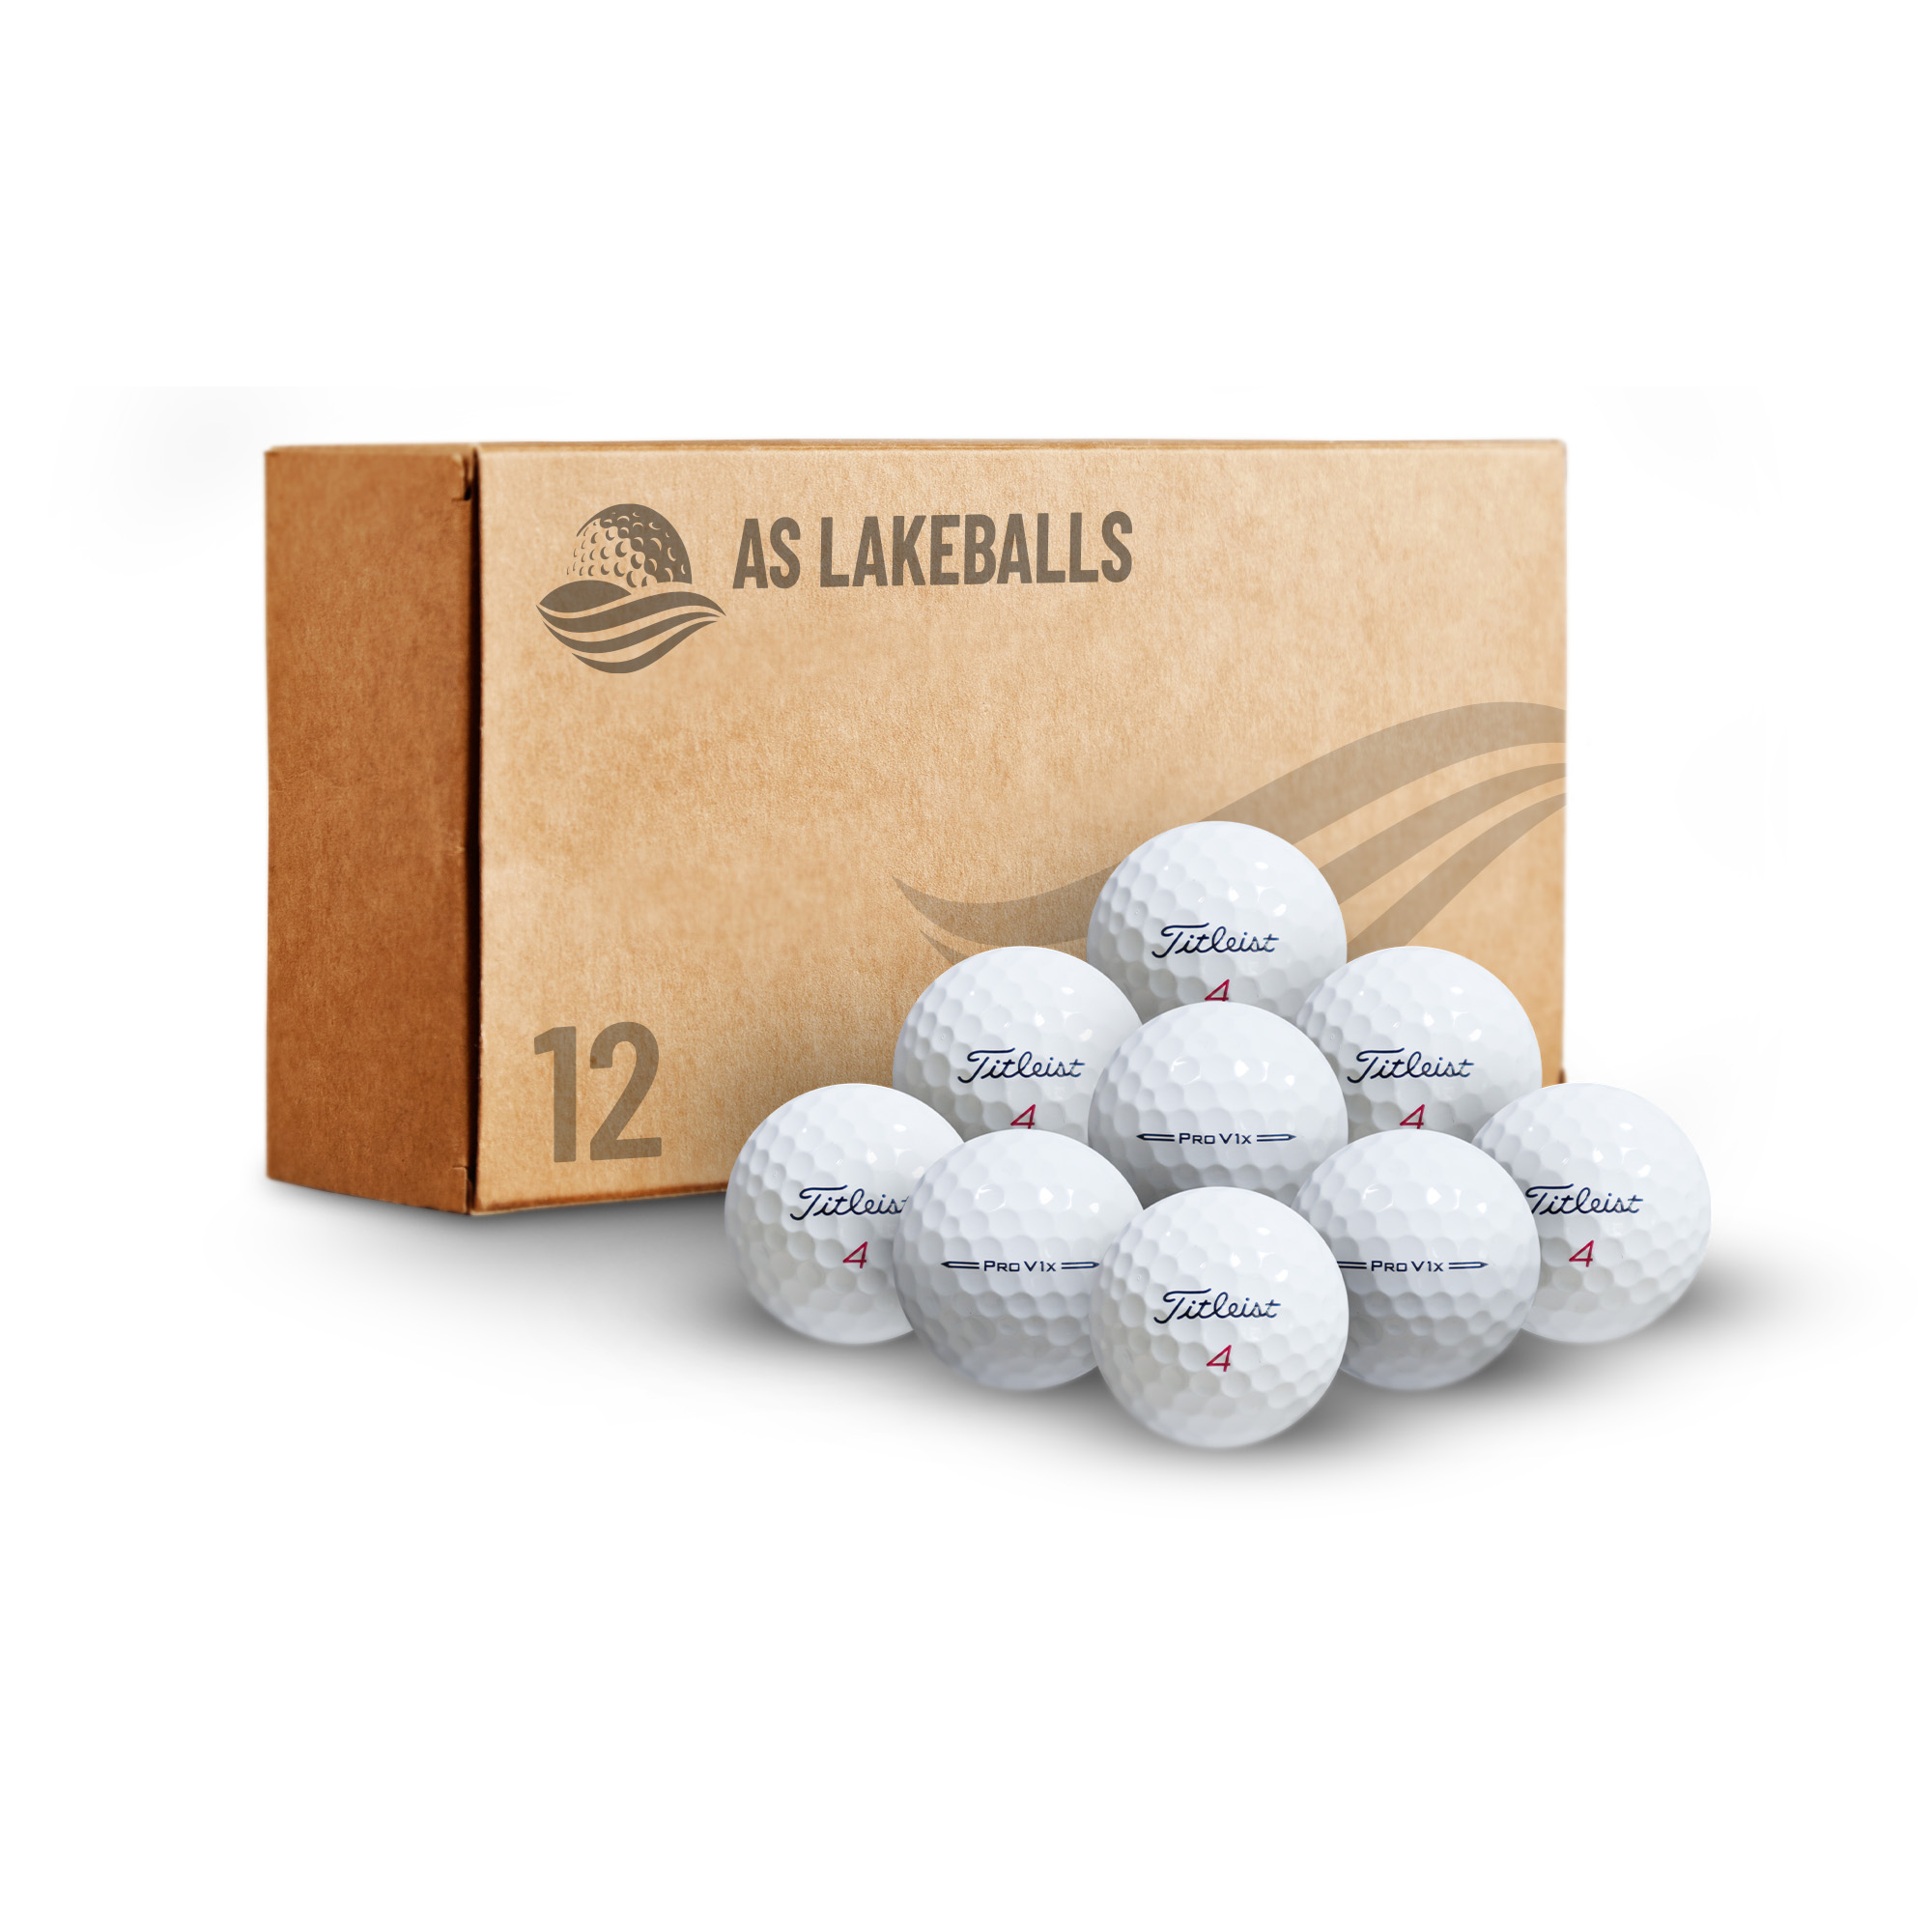 12 Stück Titleist Pro V1 X 2024 AA Lakeballs bei AS Lakeballs günstig kaufen